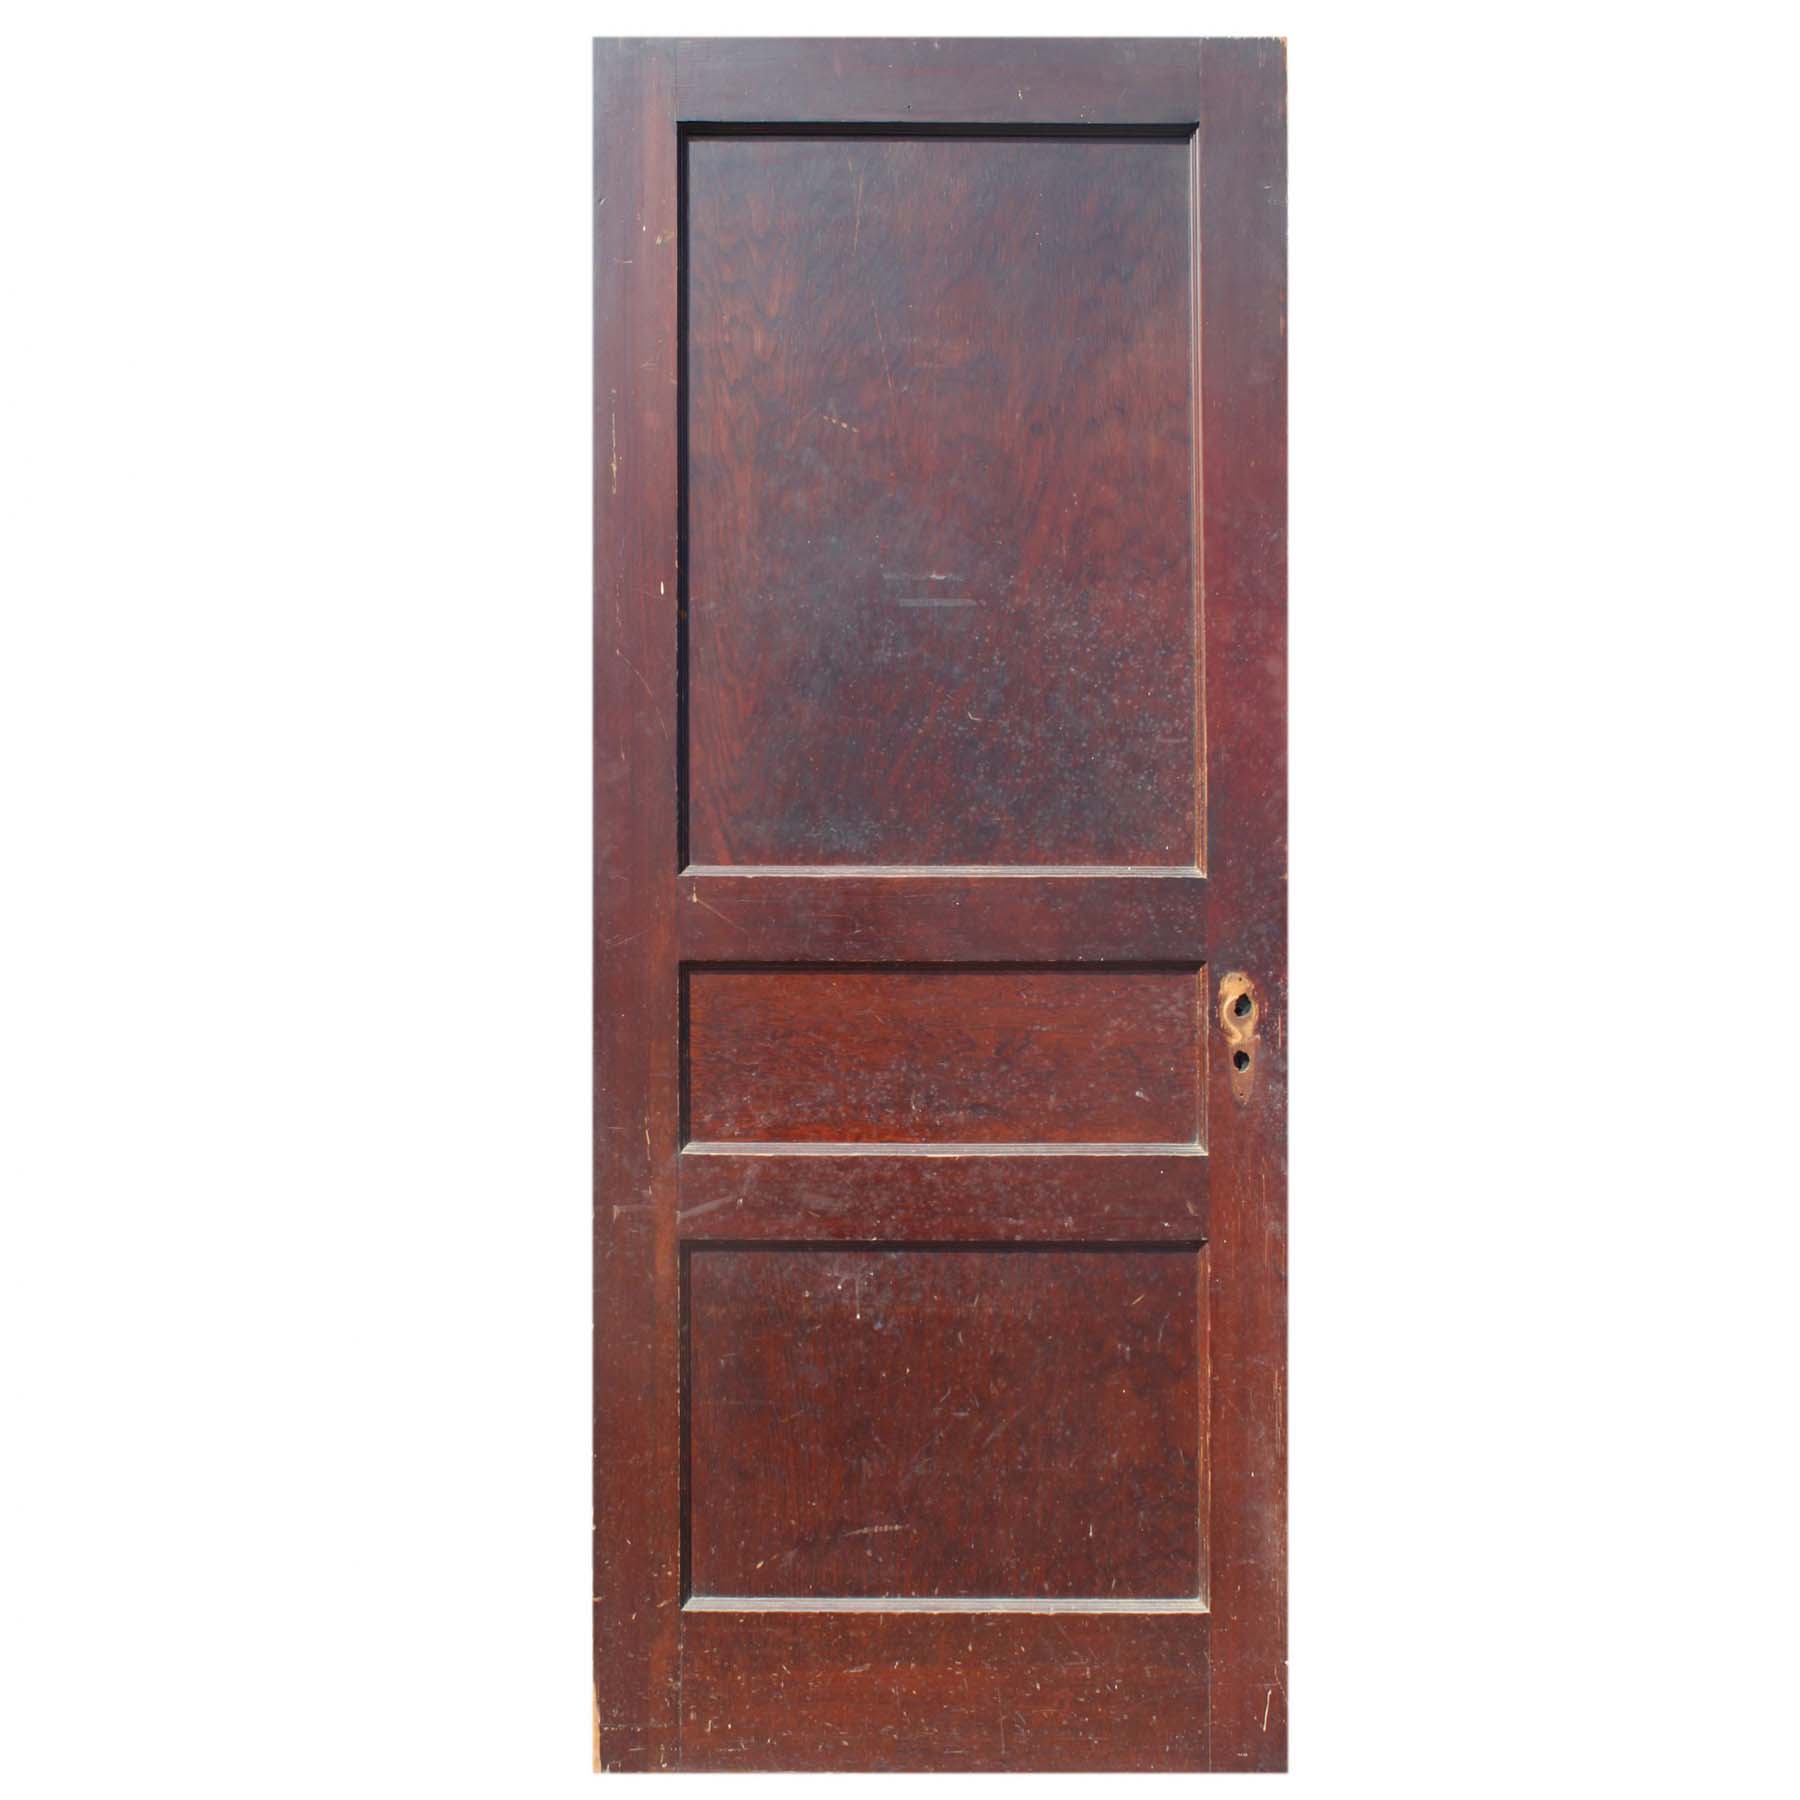 SOLD Salvaged 32” Three-Panel Solid Wood Door-0